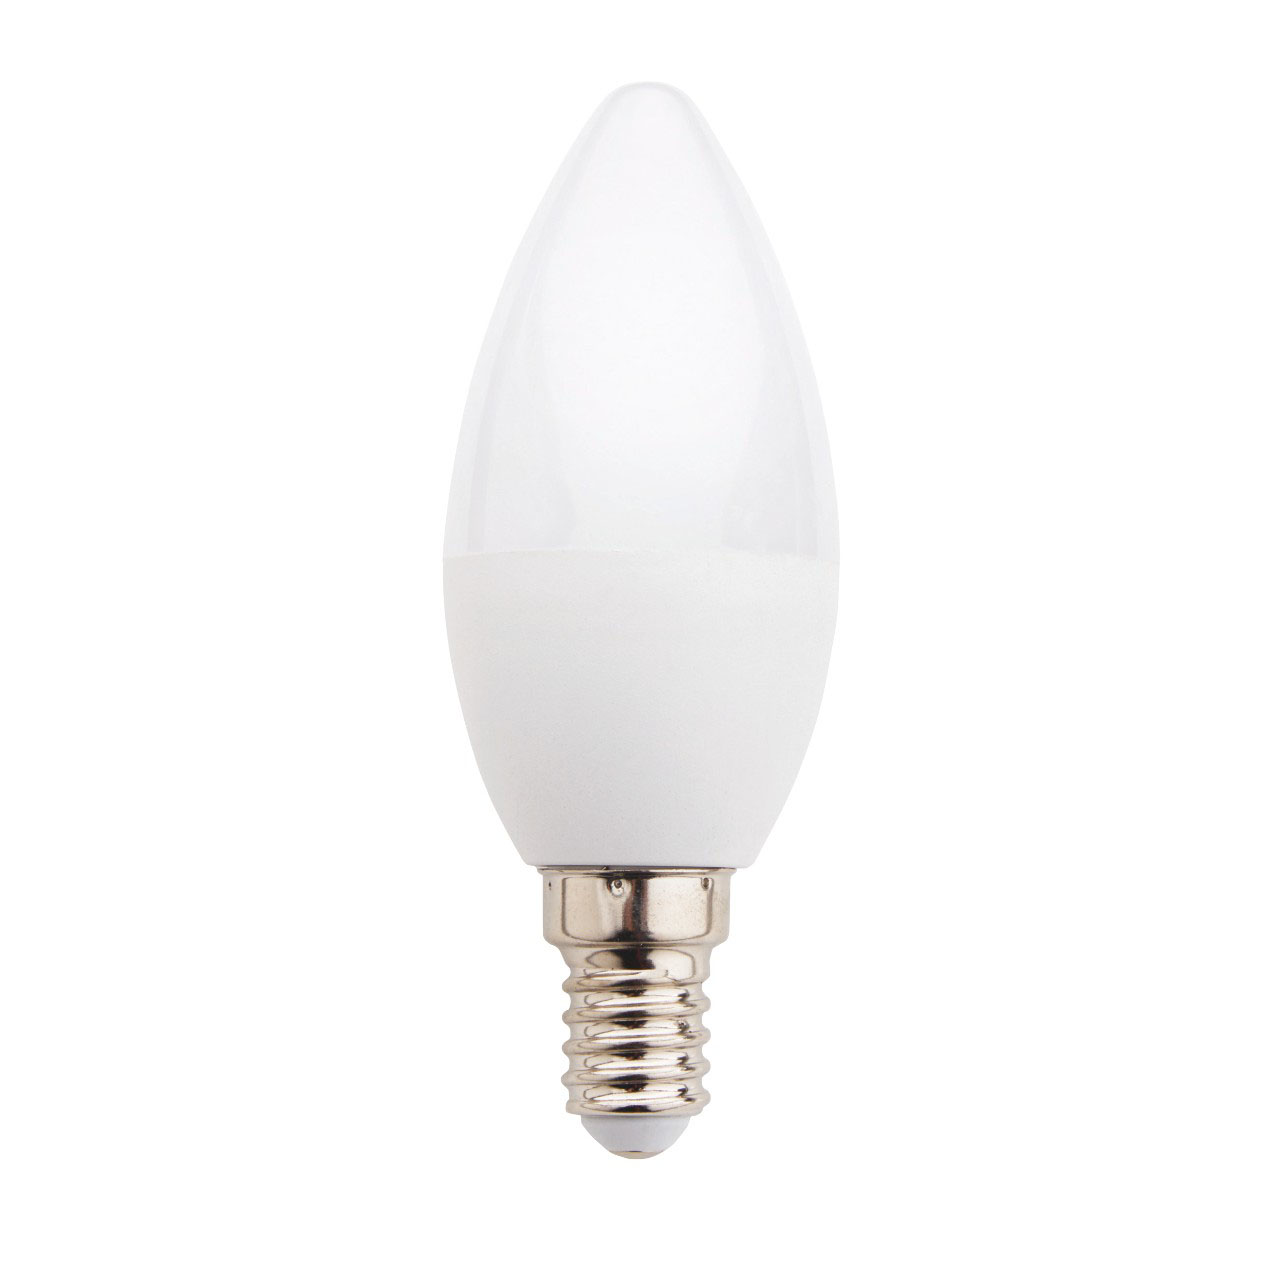 LED GLS Light Bulbs - Pack of 4